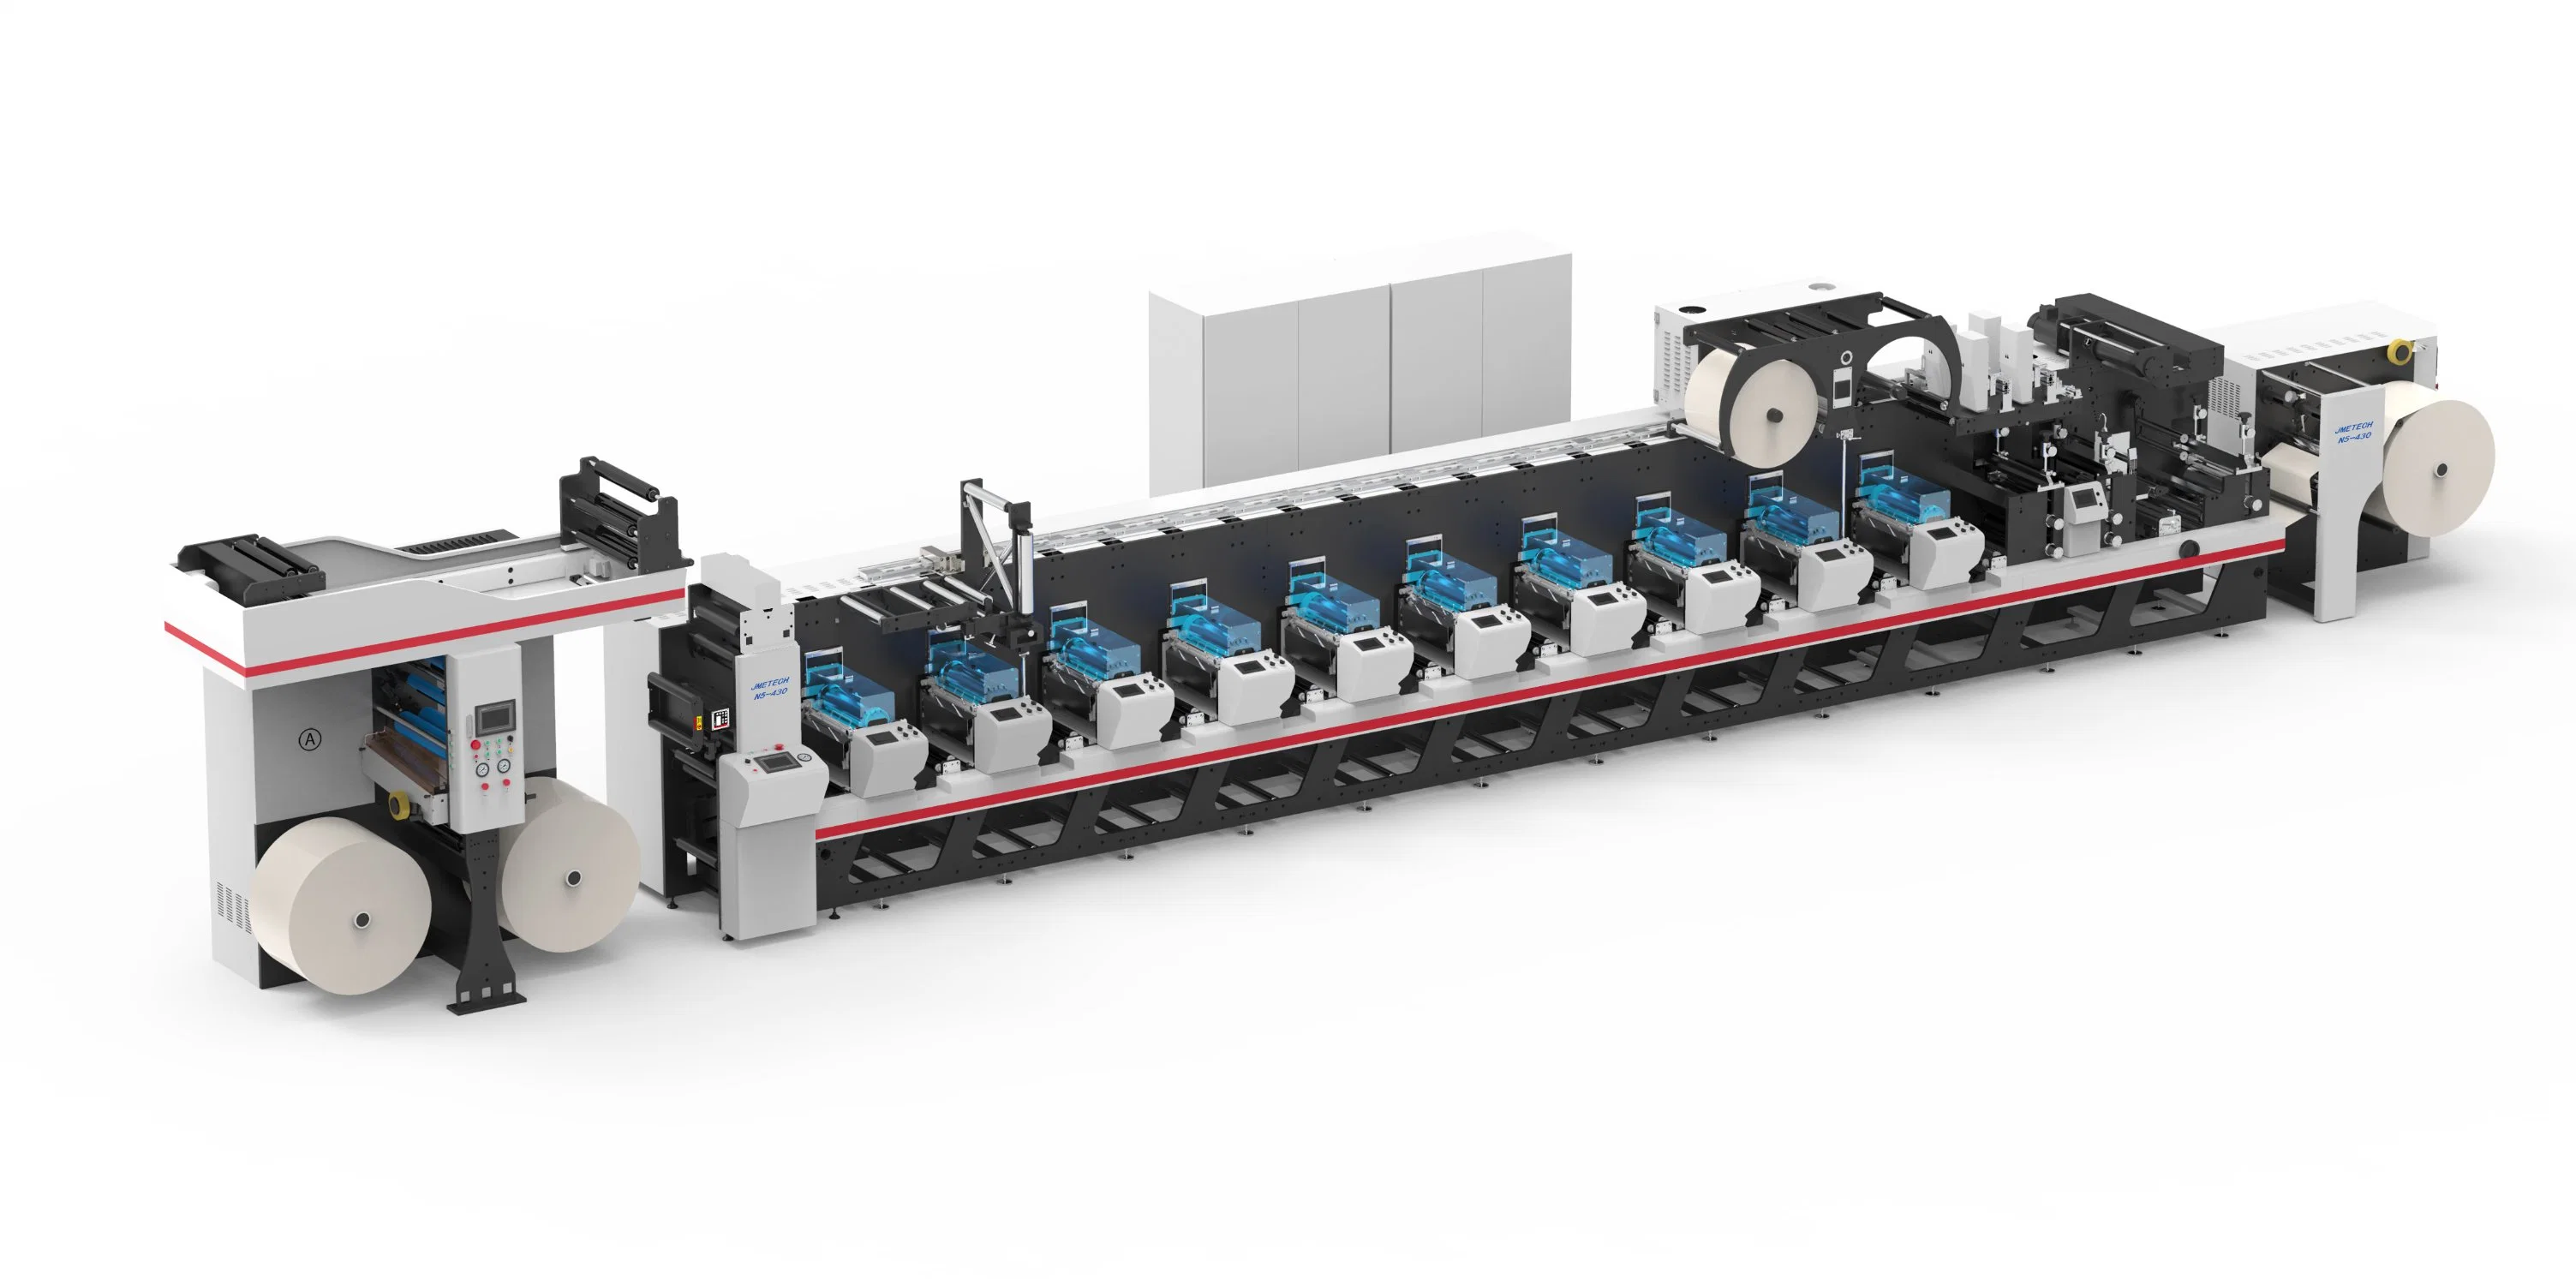 Máquina de impressão Flexográfica e impressão de películas com etiquetas Flexo em linha Impressora de etiquetas de imprensa para impressão de maquinaria 2-12 cores alta velocidade